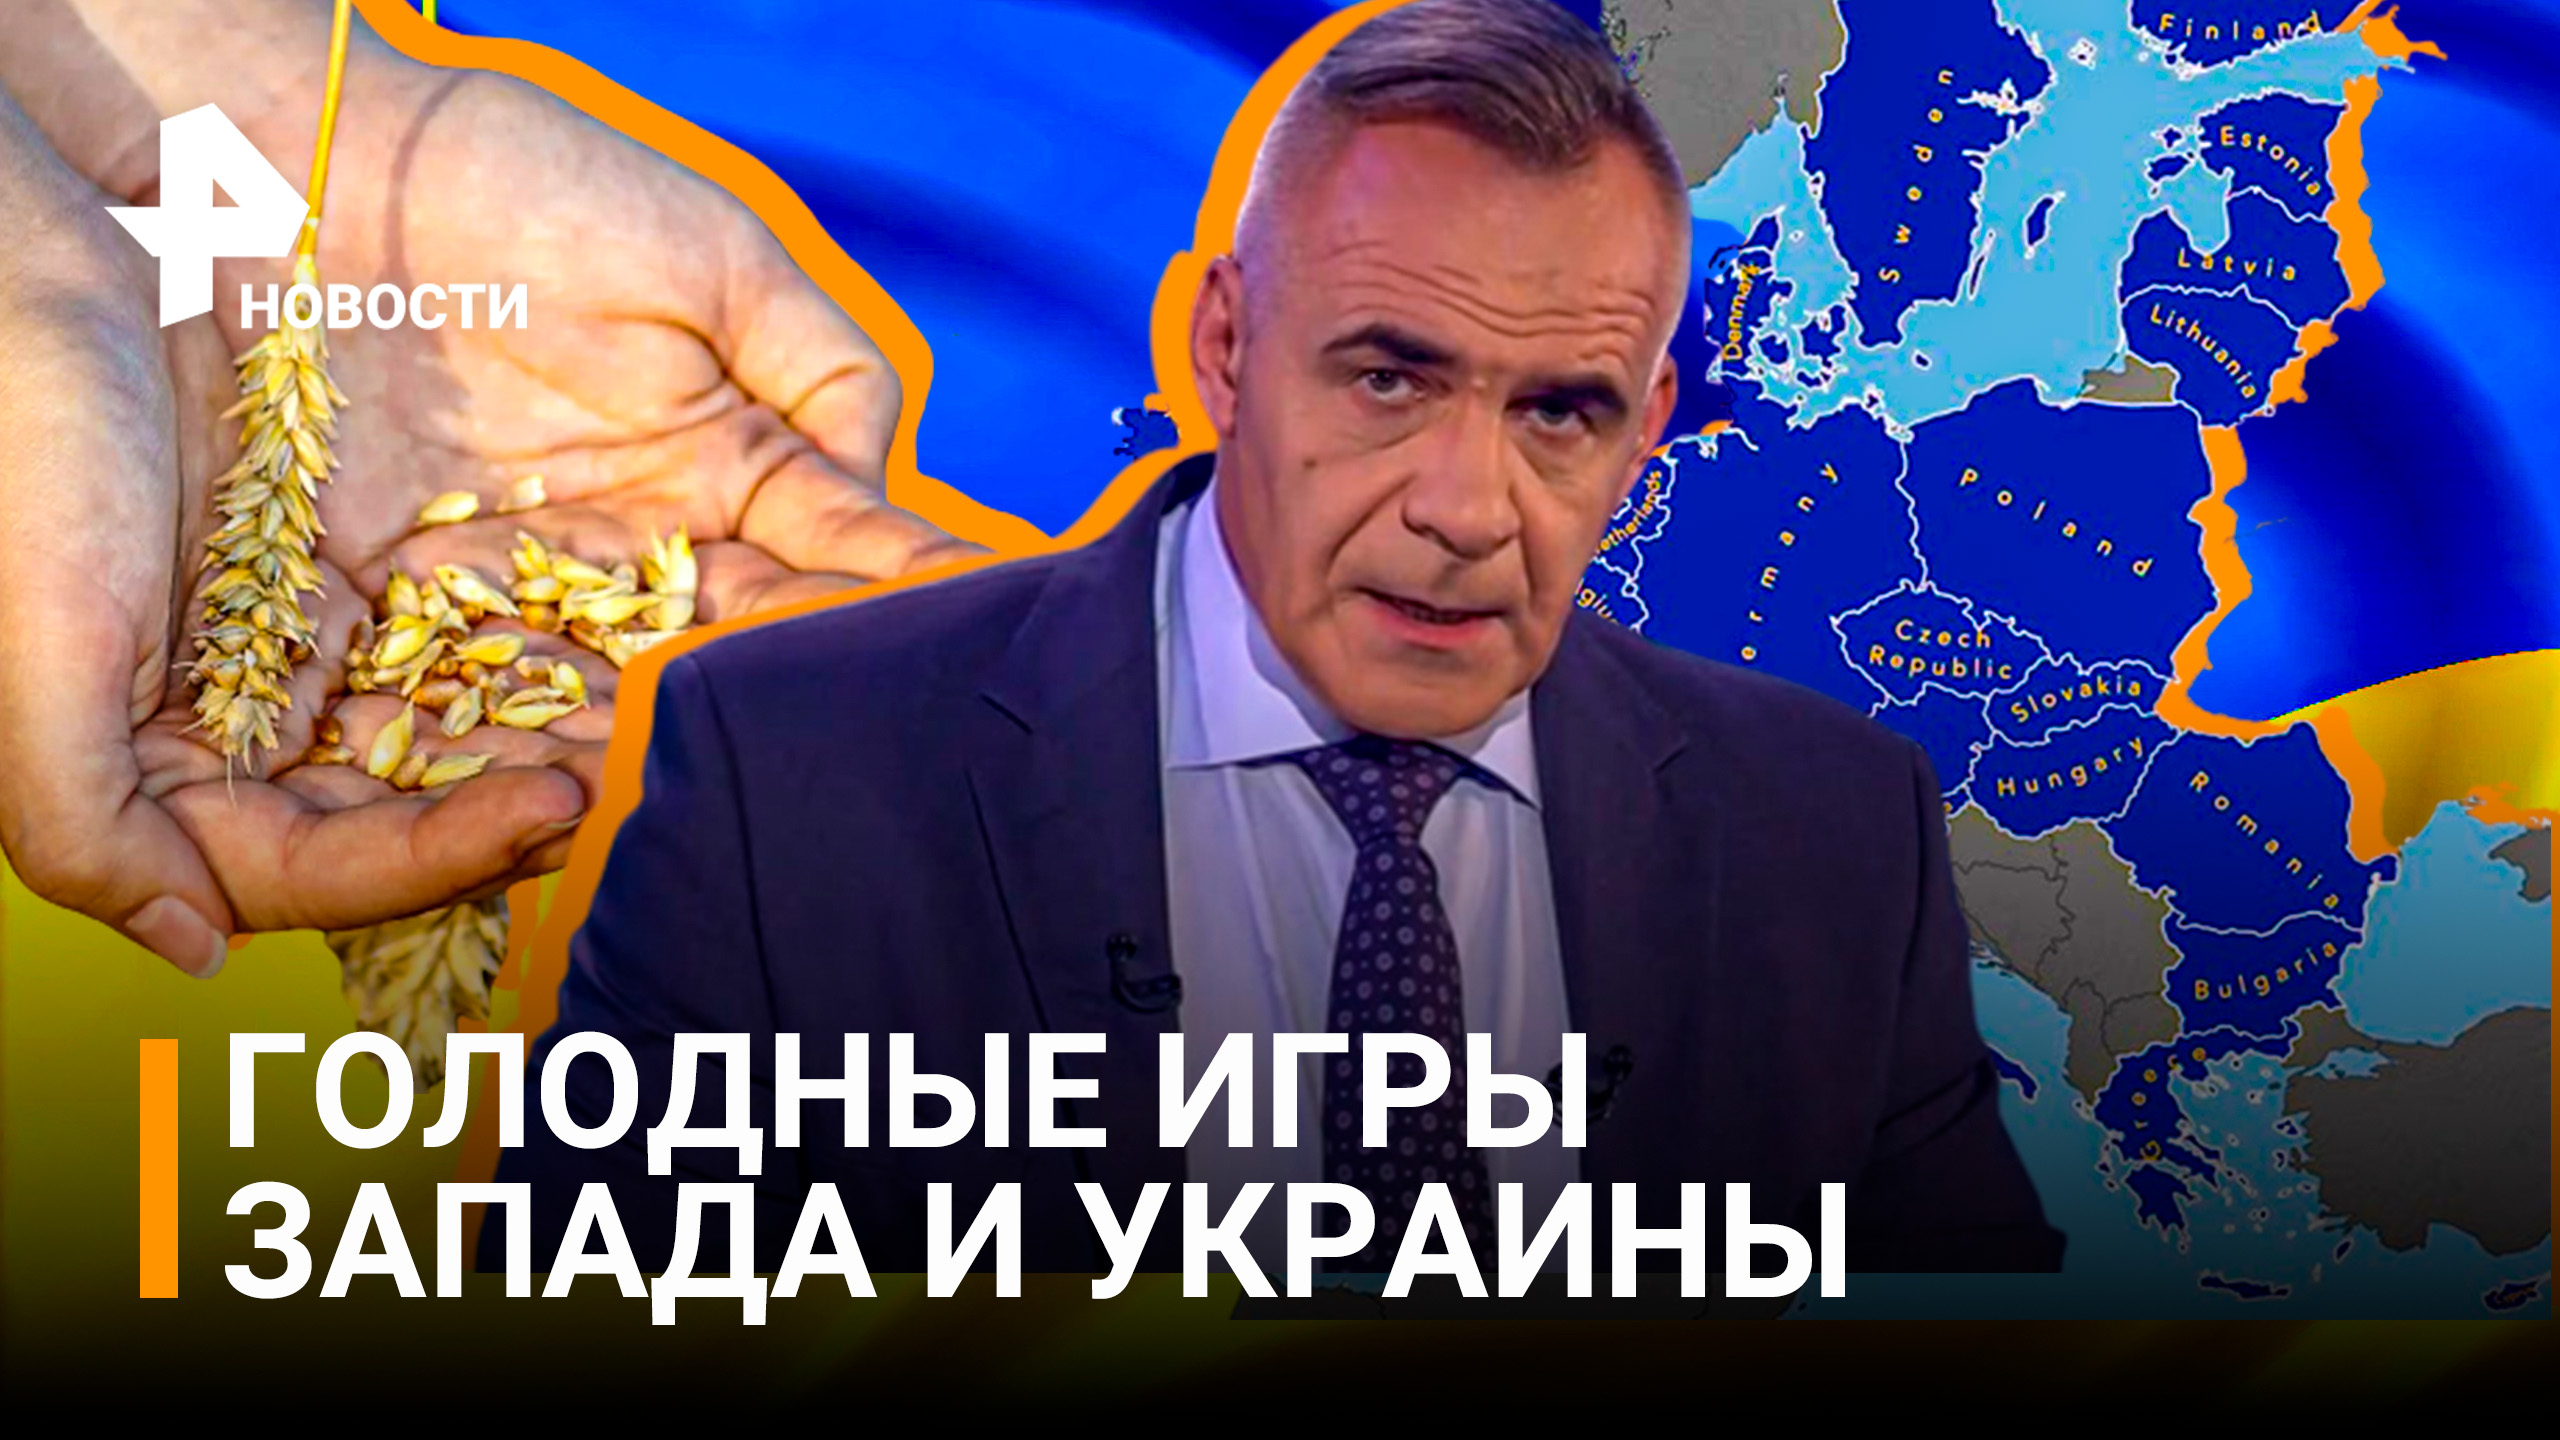 Голодные игры 2022: как Запад играет с Украиной, а проигрывает весь мир / Новости с Петром Марченко